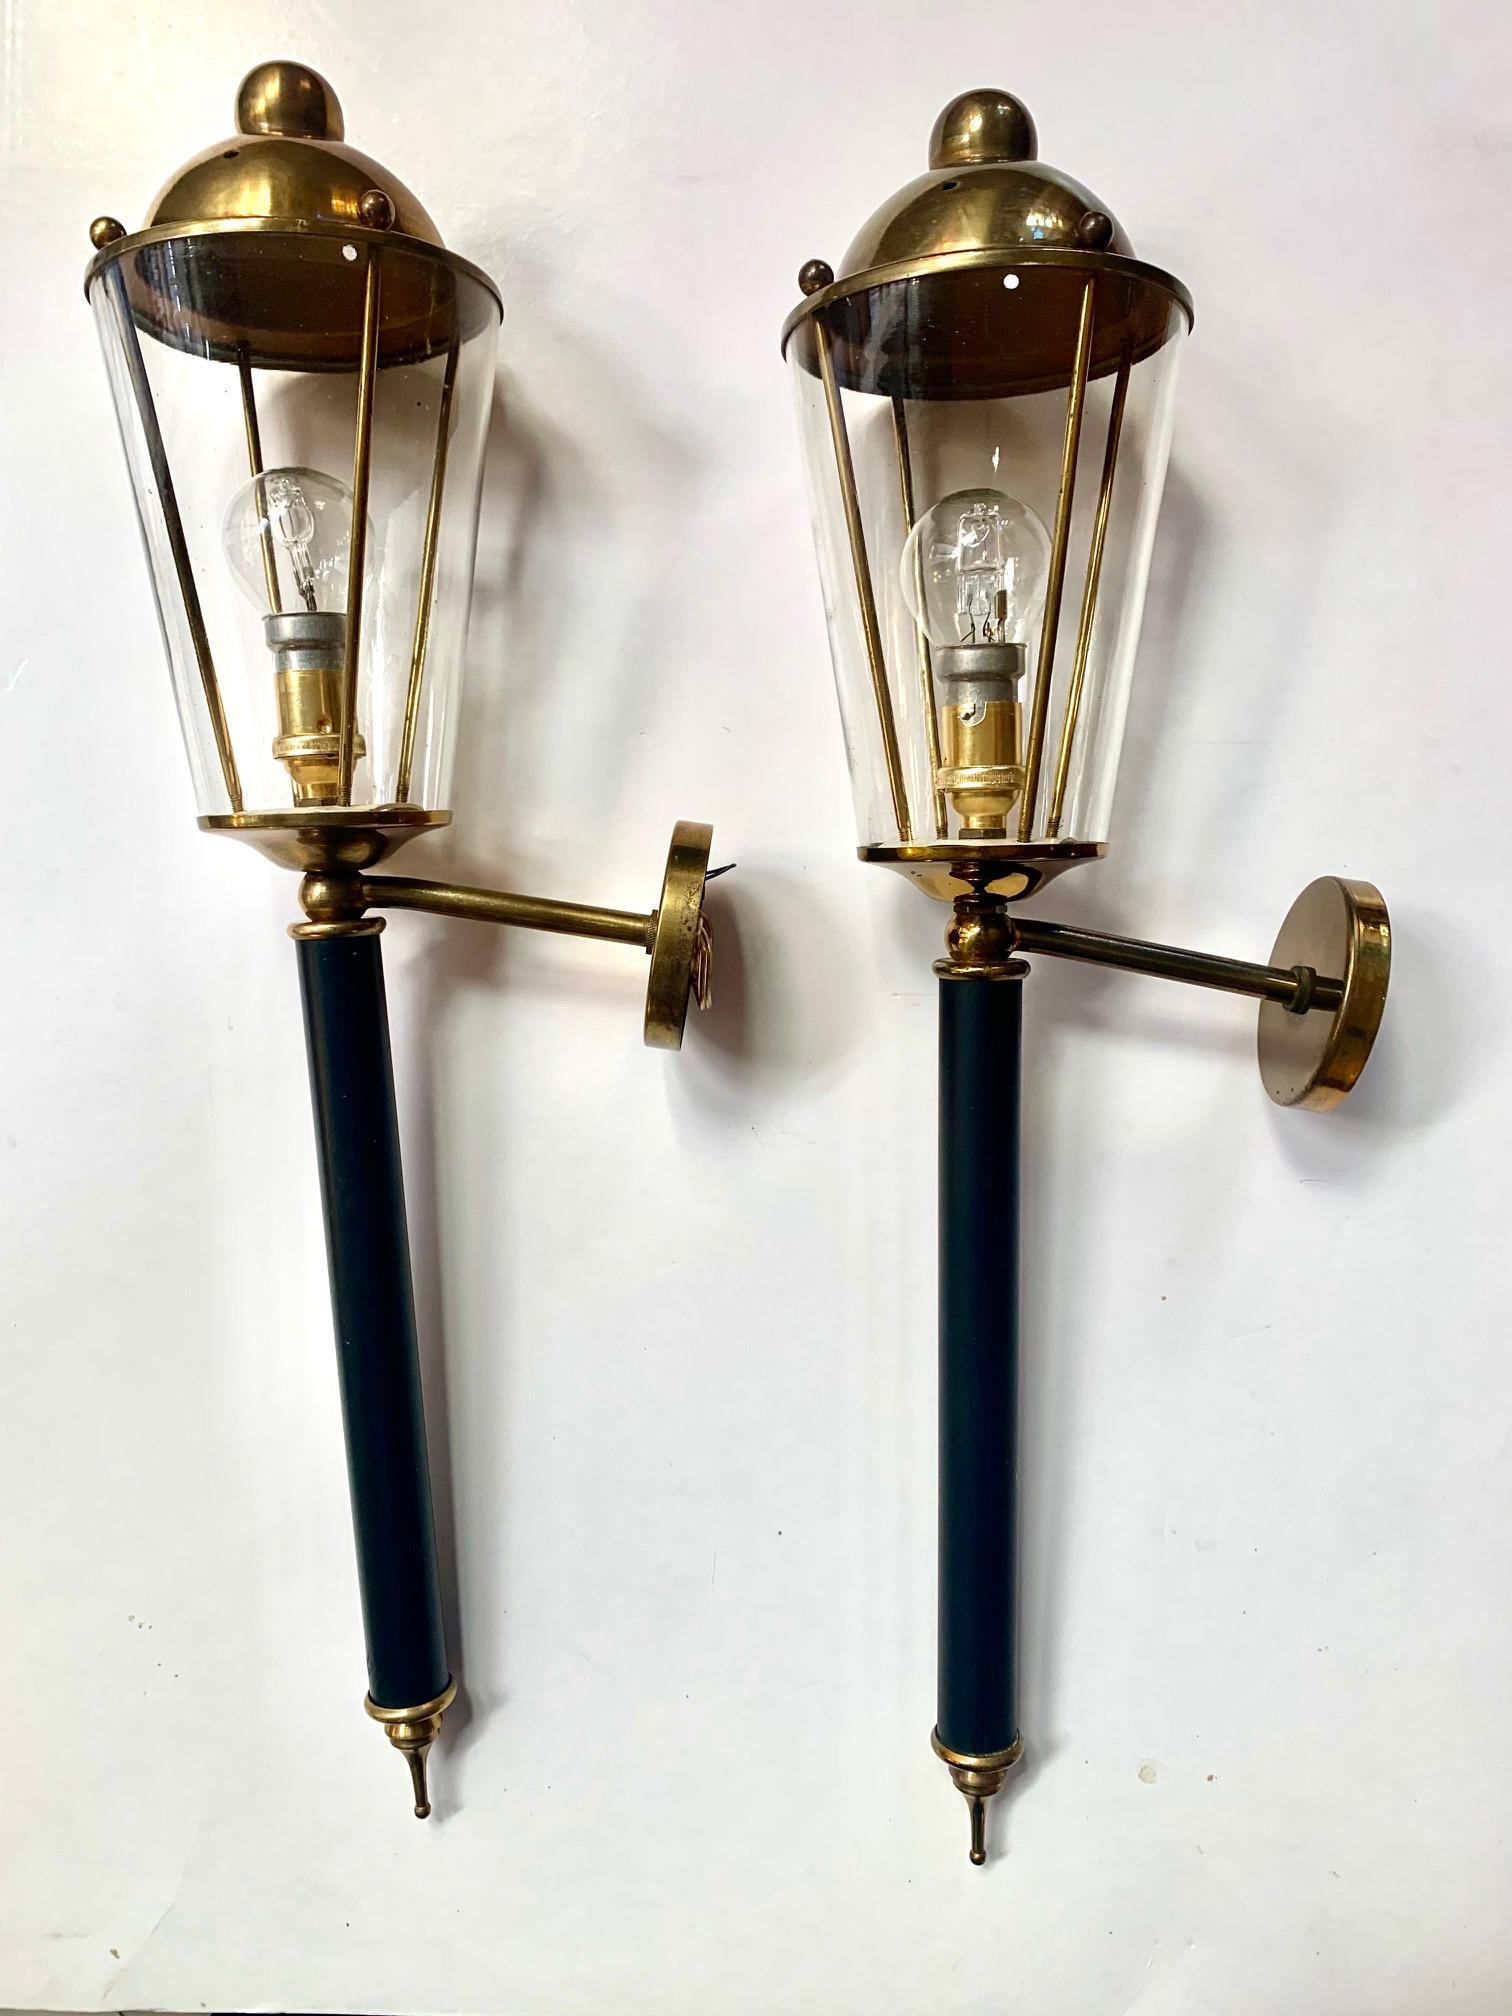 Ein Paar Wandleuchten von Maison Lunel in Form einer Fackel, aus goldfarbenem Messing und schwarz lackiertem Metall, mit kristallenen Lampenschirmen und einer komplett erneuerten elektrischen Anlage.